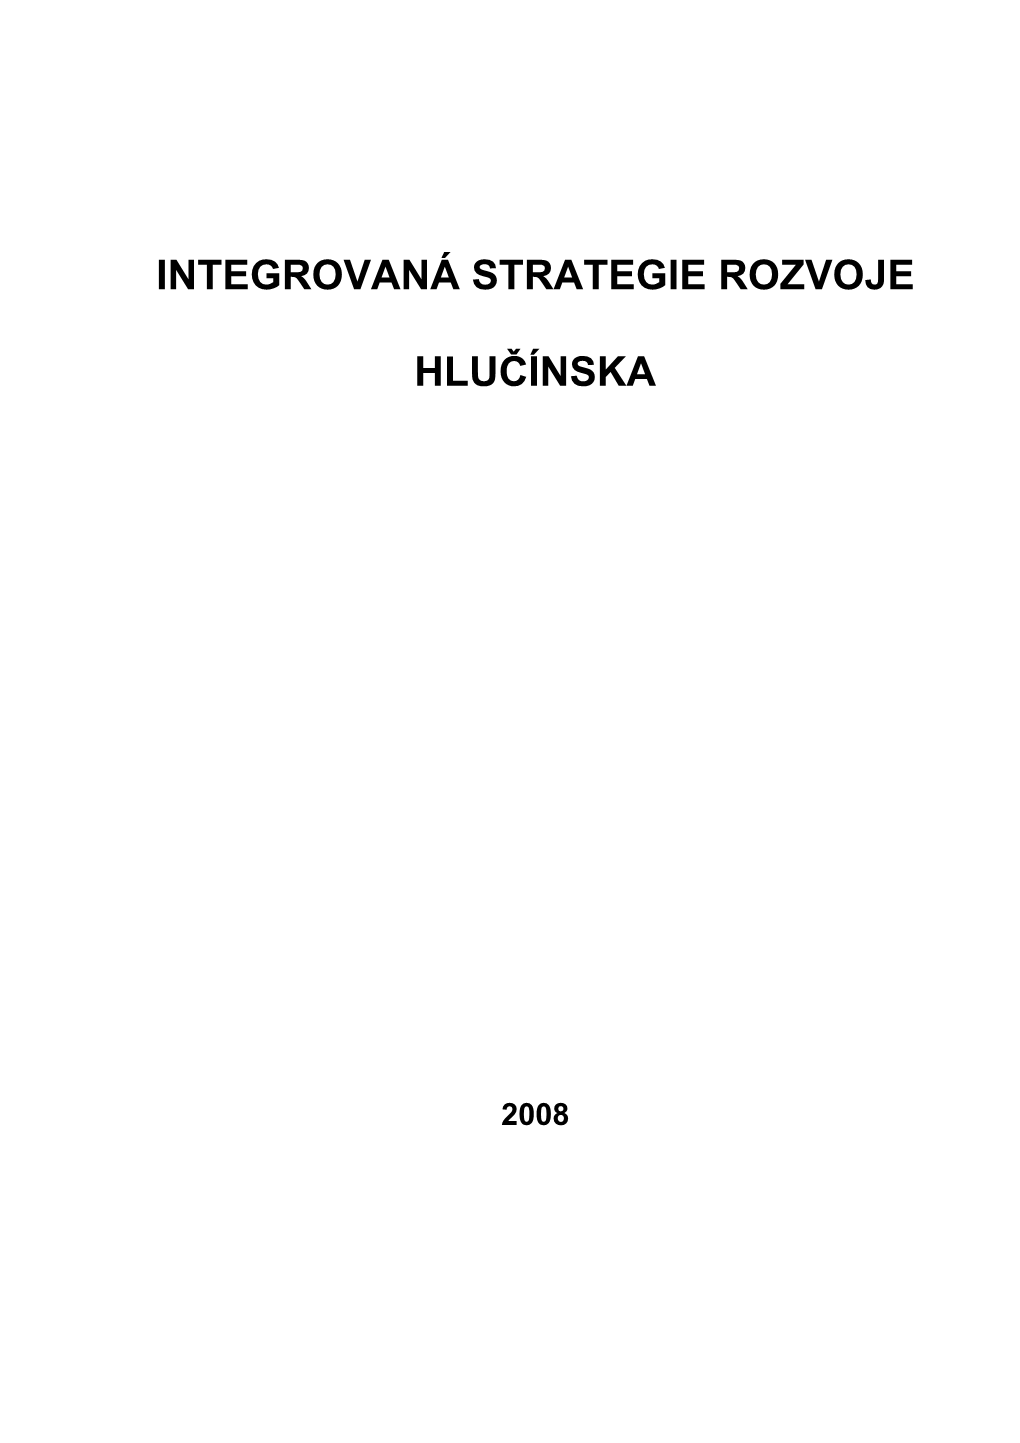 Integrovana Strategie Hlucinsko R-PIC 0508